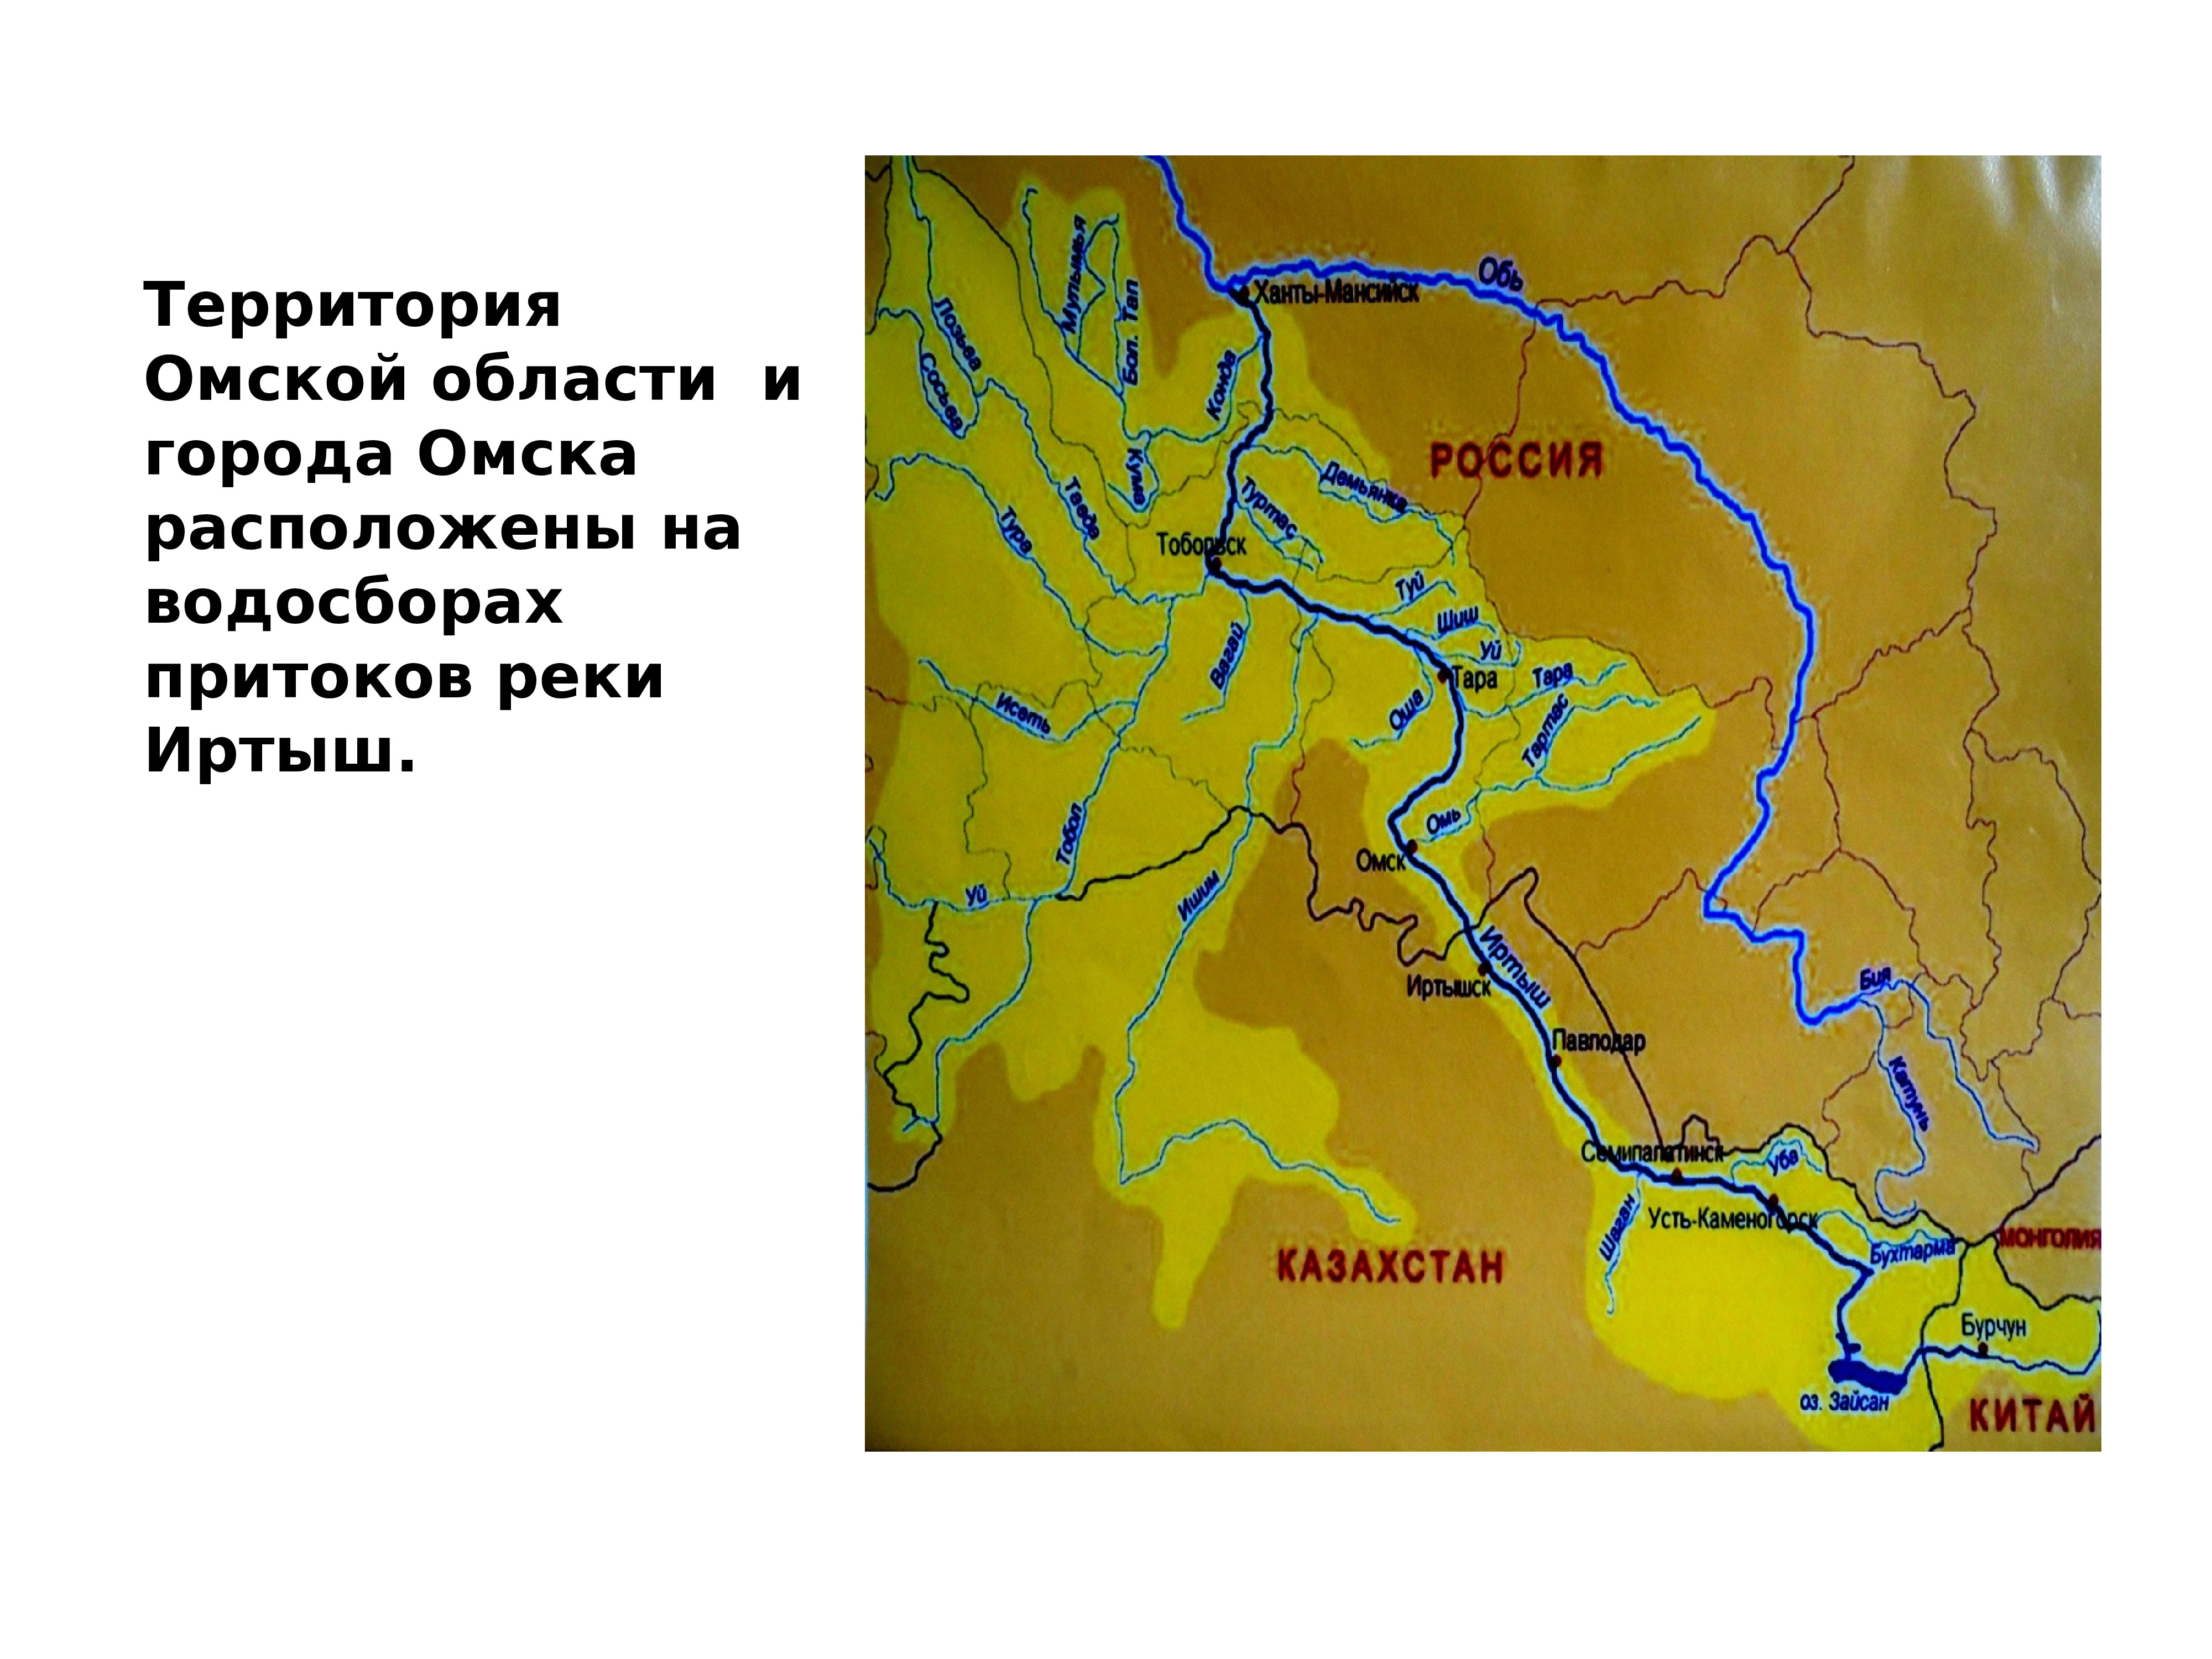 Подпишите на карте реку иртыш. Схема реки Иртыш в Омске. Схема реки Иртыш 2 класс. Исток реки Иртыш на карте. Схема реки Иртыш в Омске 2 класс окружающий мир.